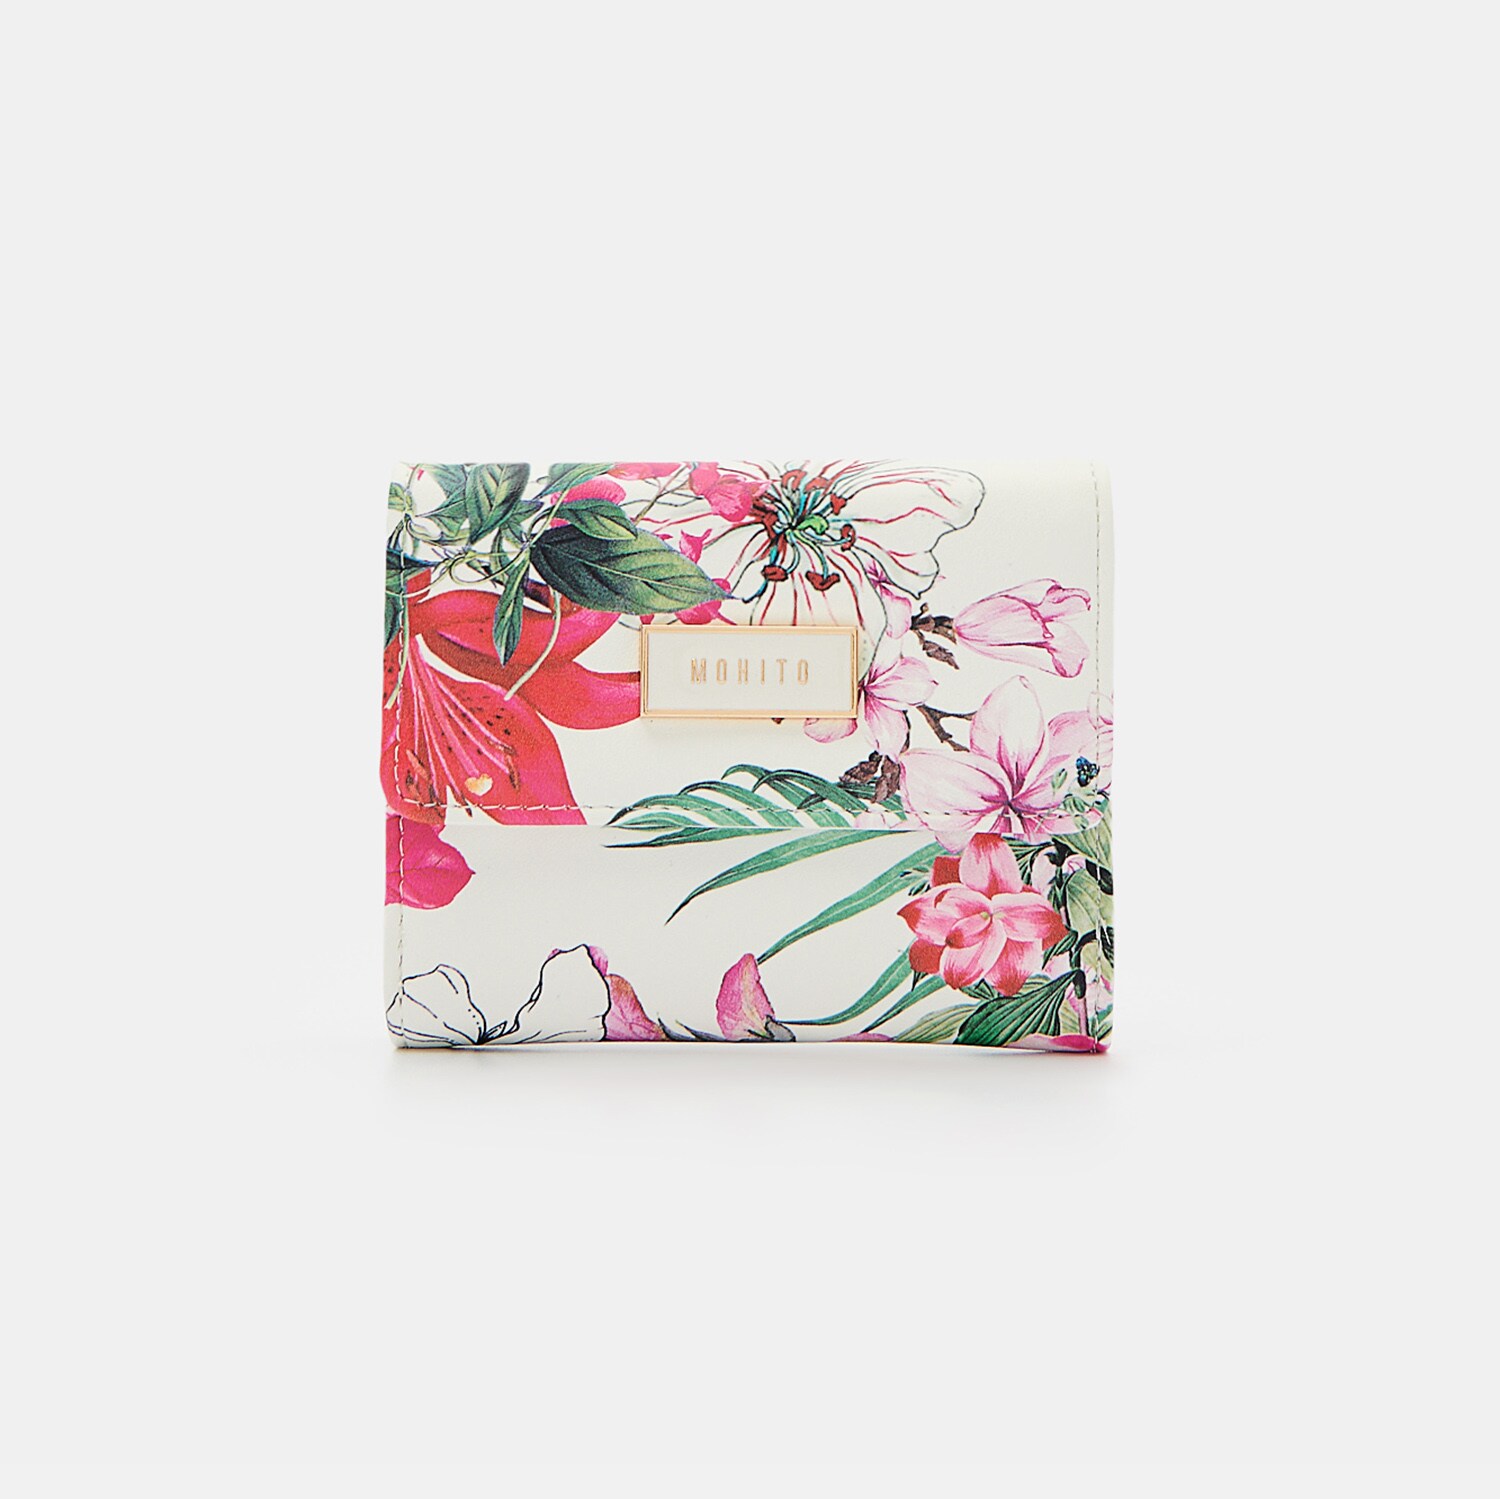 Mohito - Portofel mic cu flori - Multicolor image14